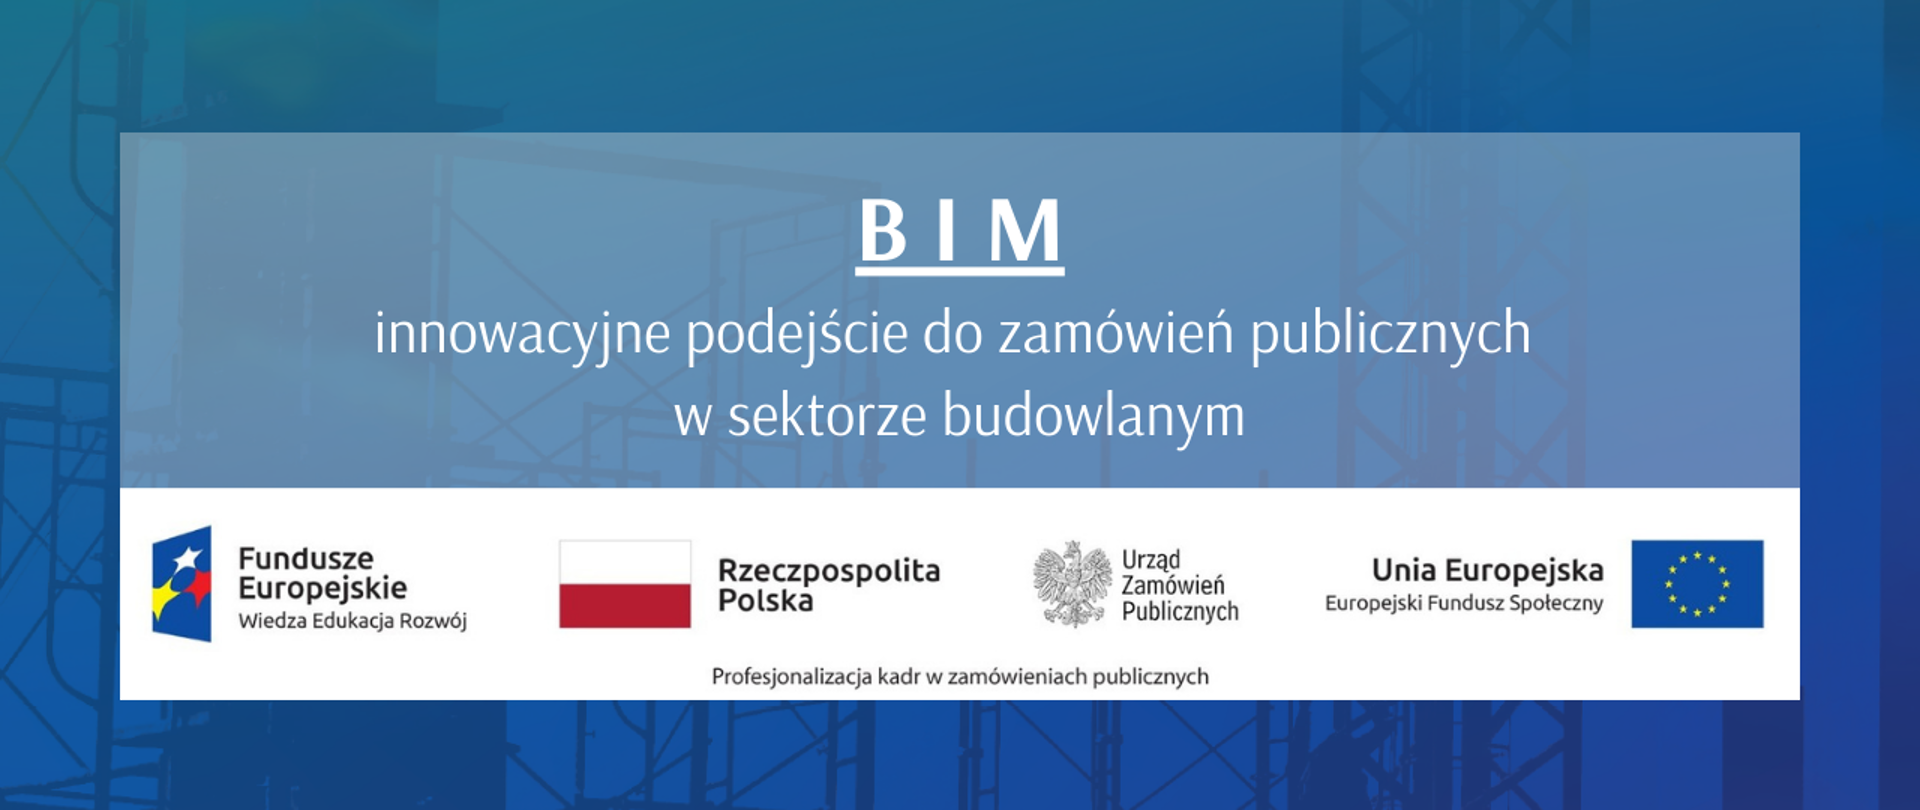 BIM - innowacyjne podejście do zamówień publicznych w sektorze budowlanym